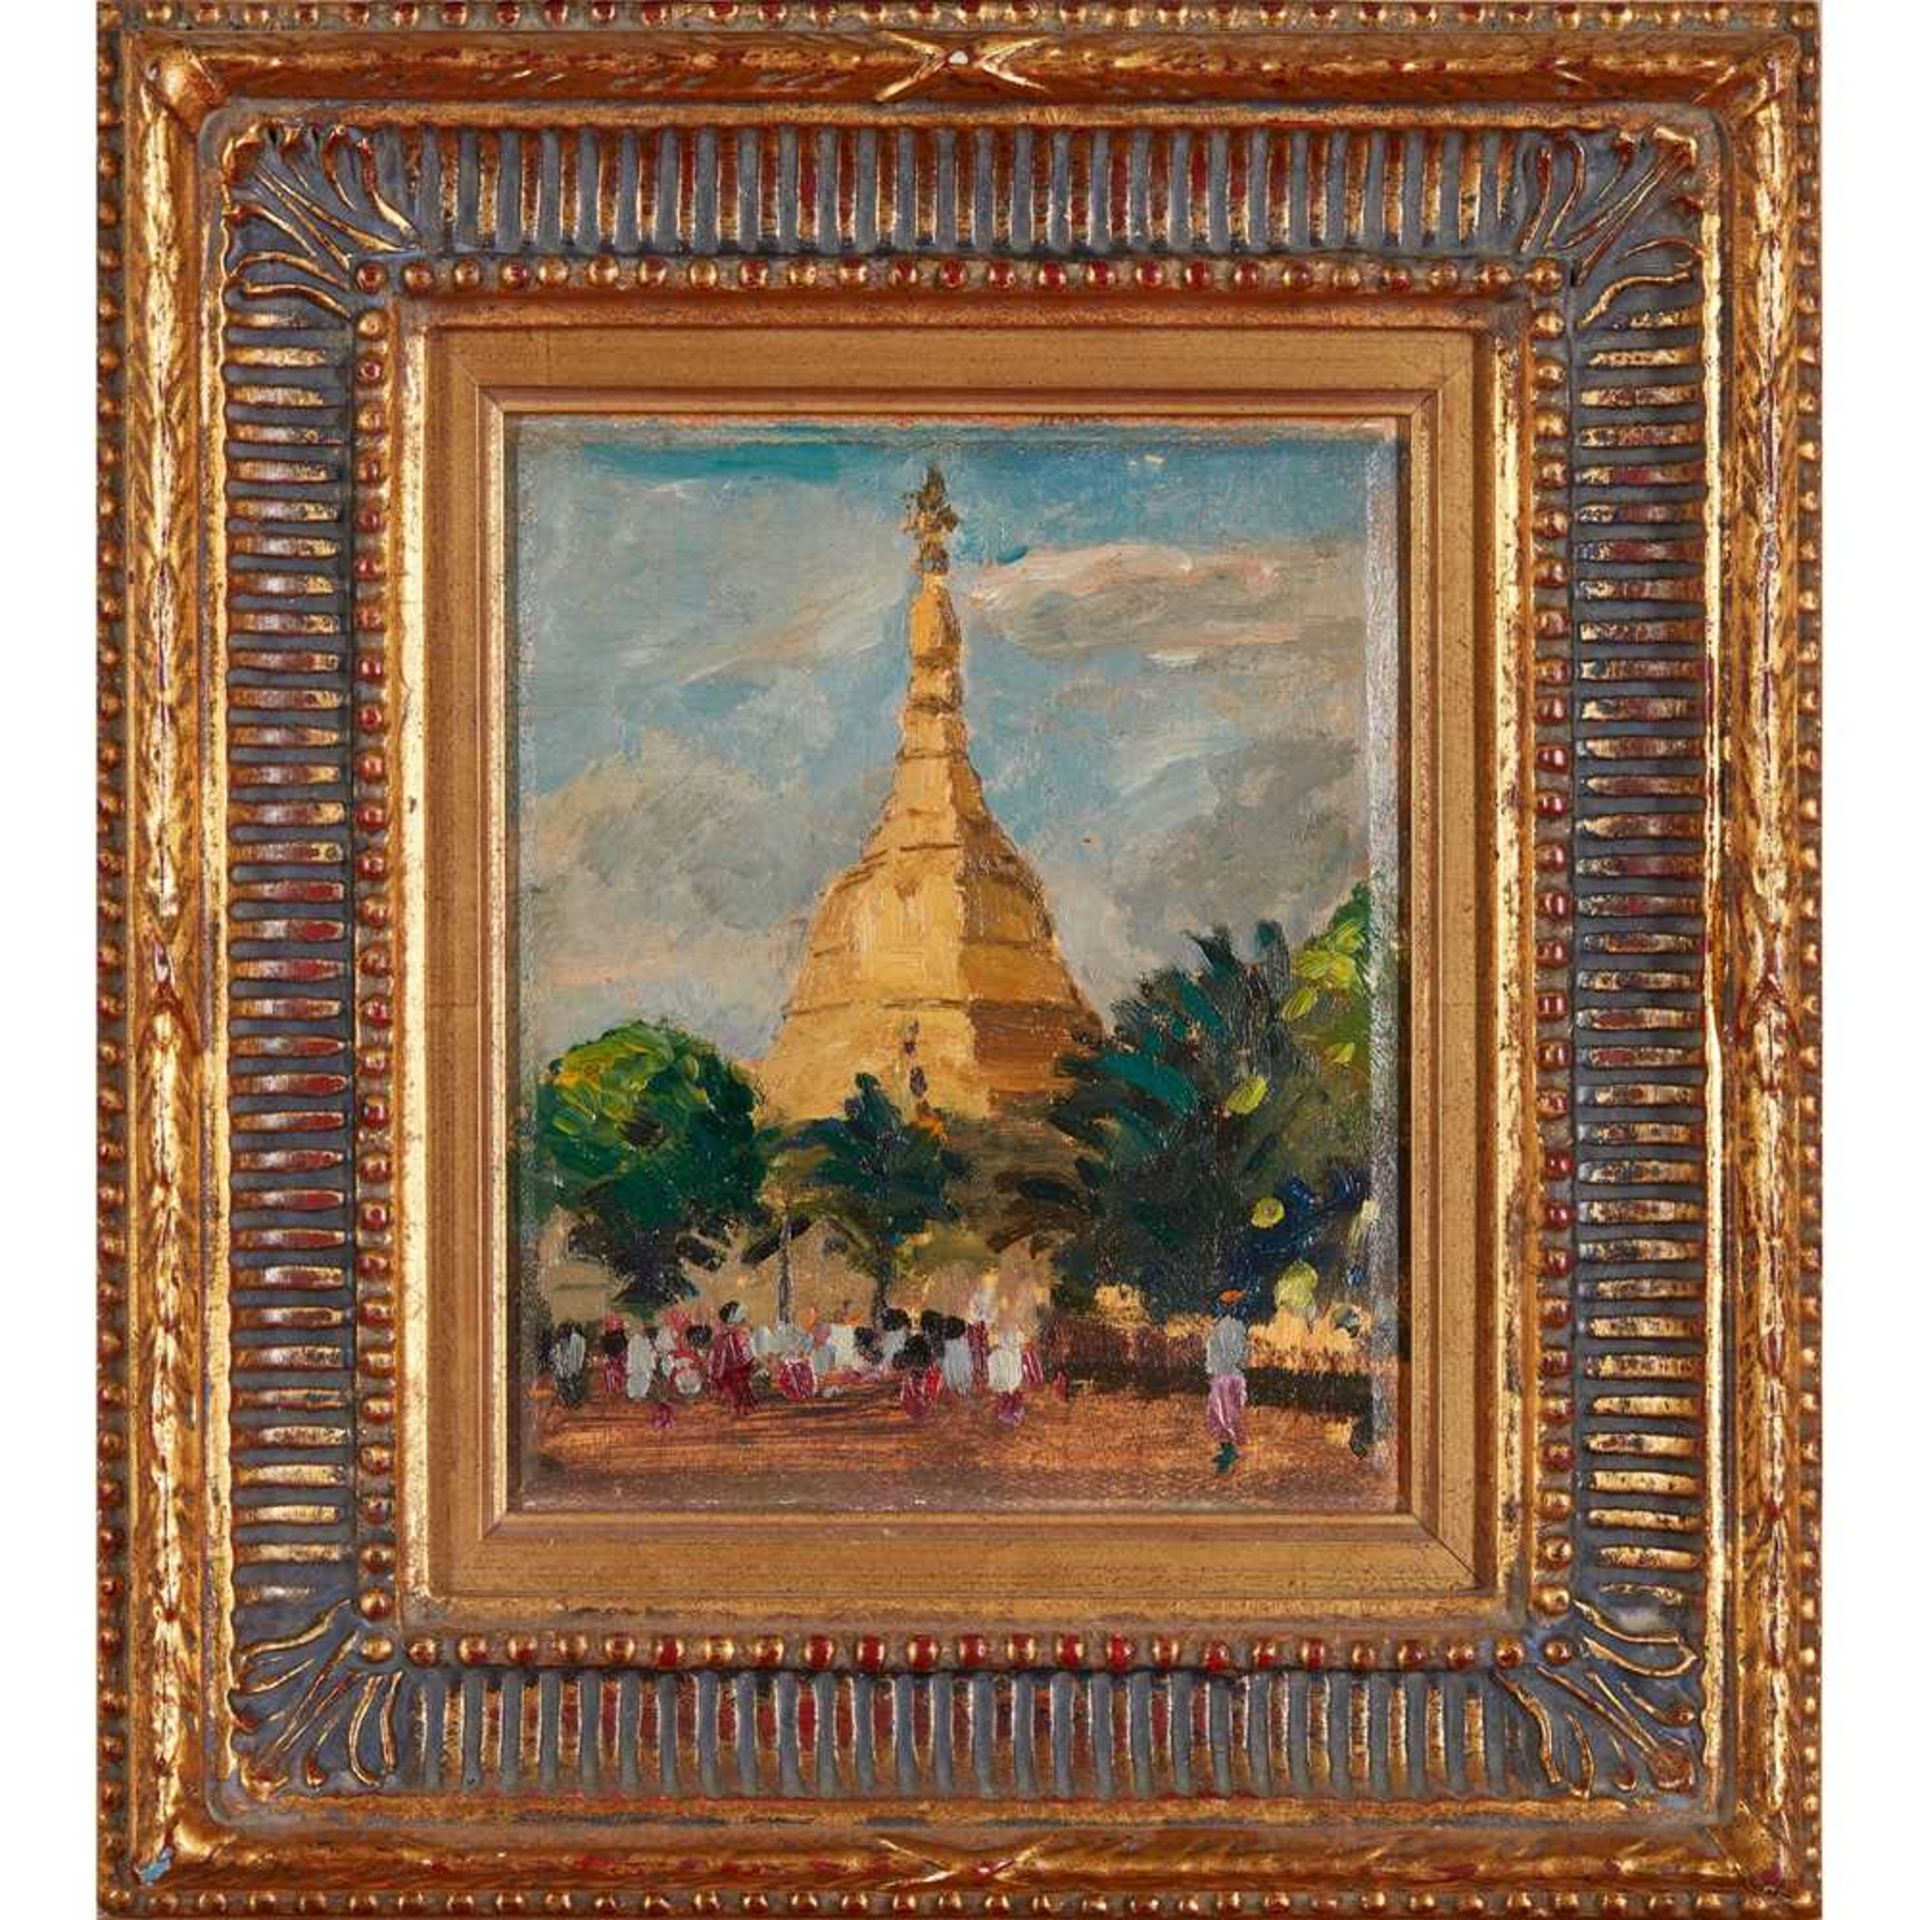 § Gerald Festus Kelly K.C.V.O., P.R.A., R.H.A., H.R.S.A. (British 1879-1972) Shwe Dagon Pagoda, - Image 2 of 3